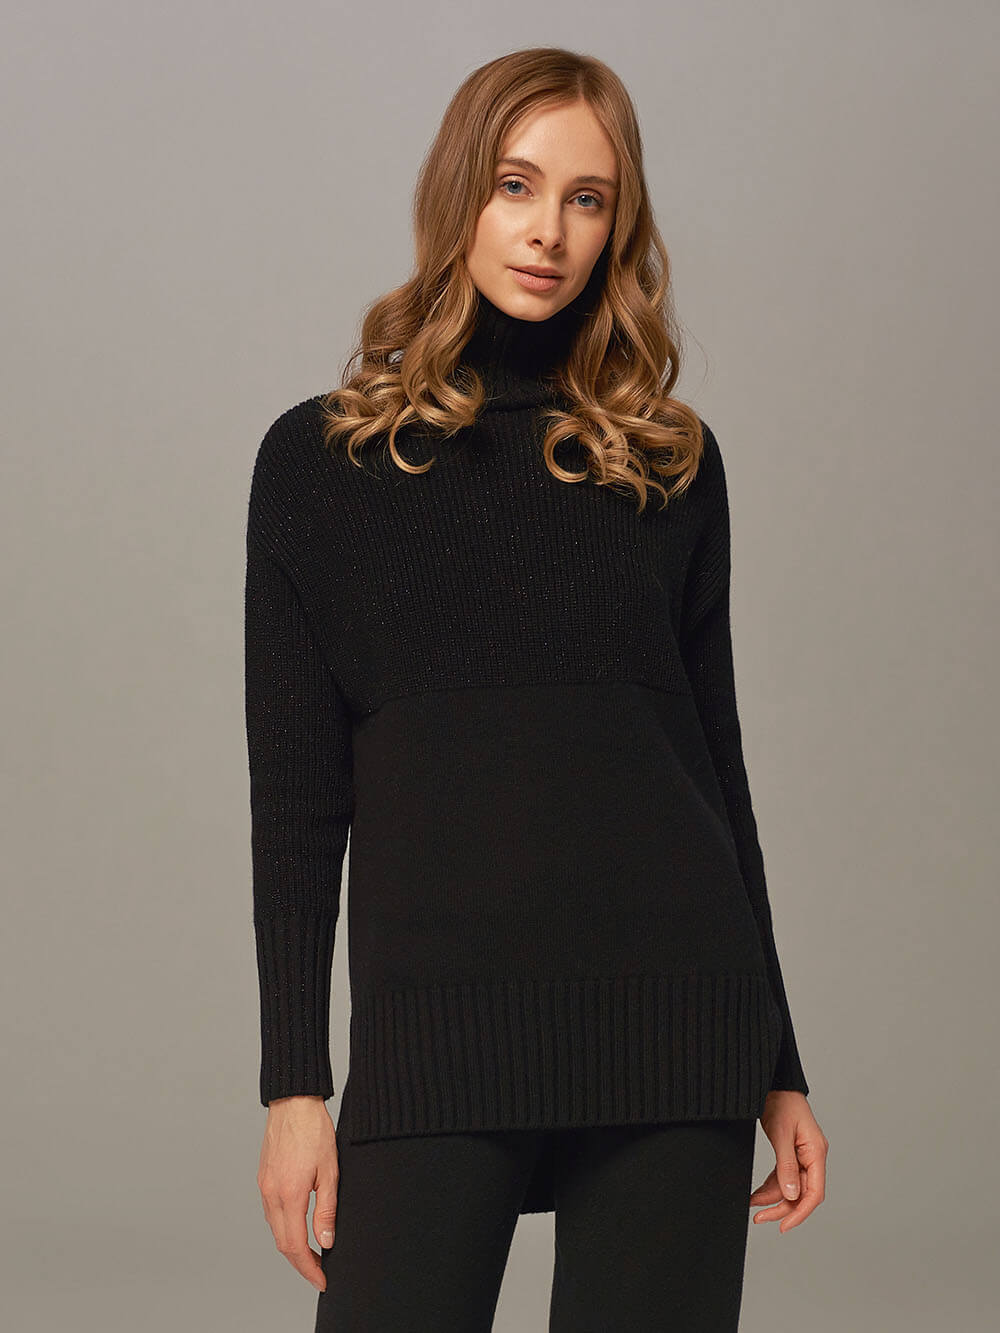 Женский свитер черного цвета с высоким горлом из шерсти и кашемира